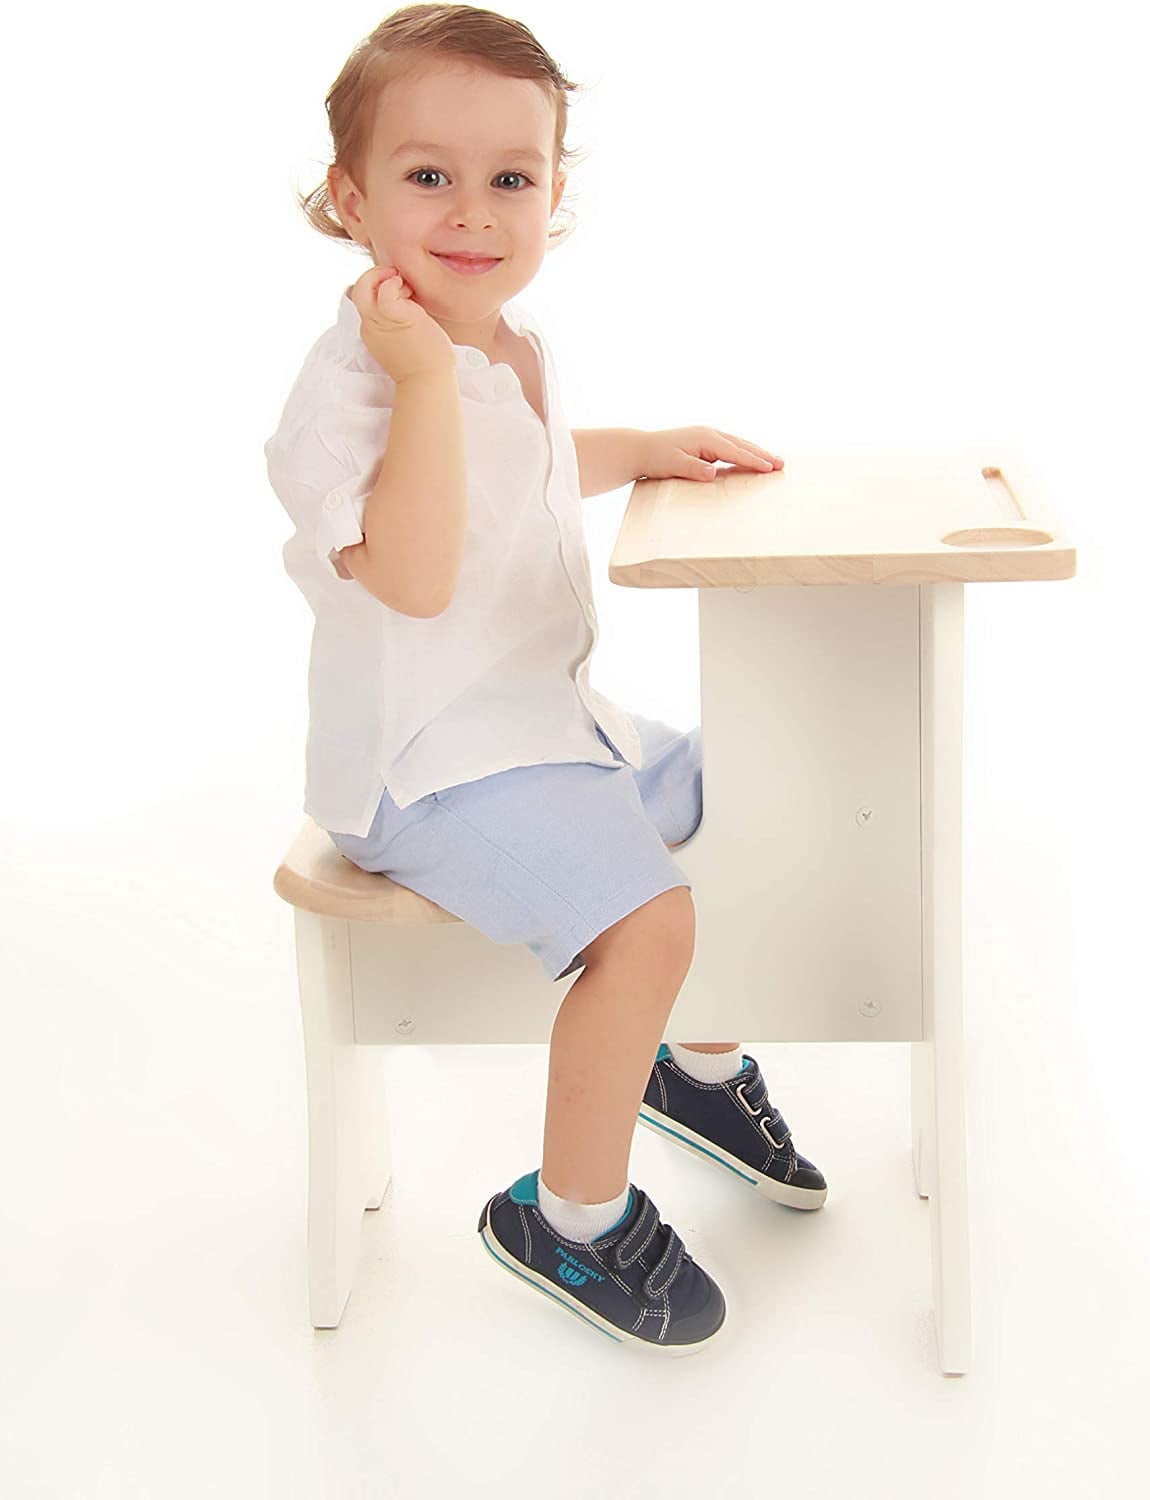 boy desks for sale